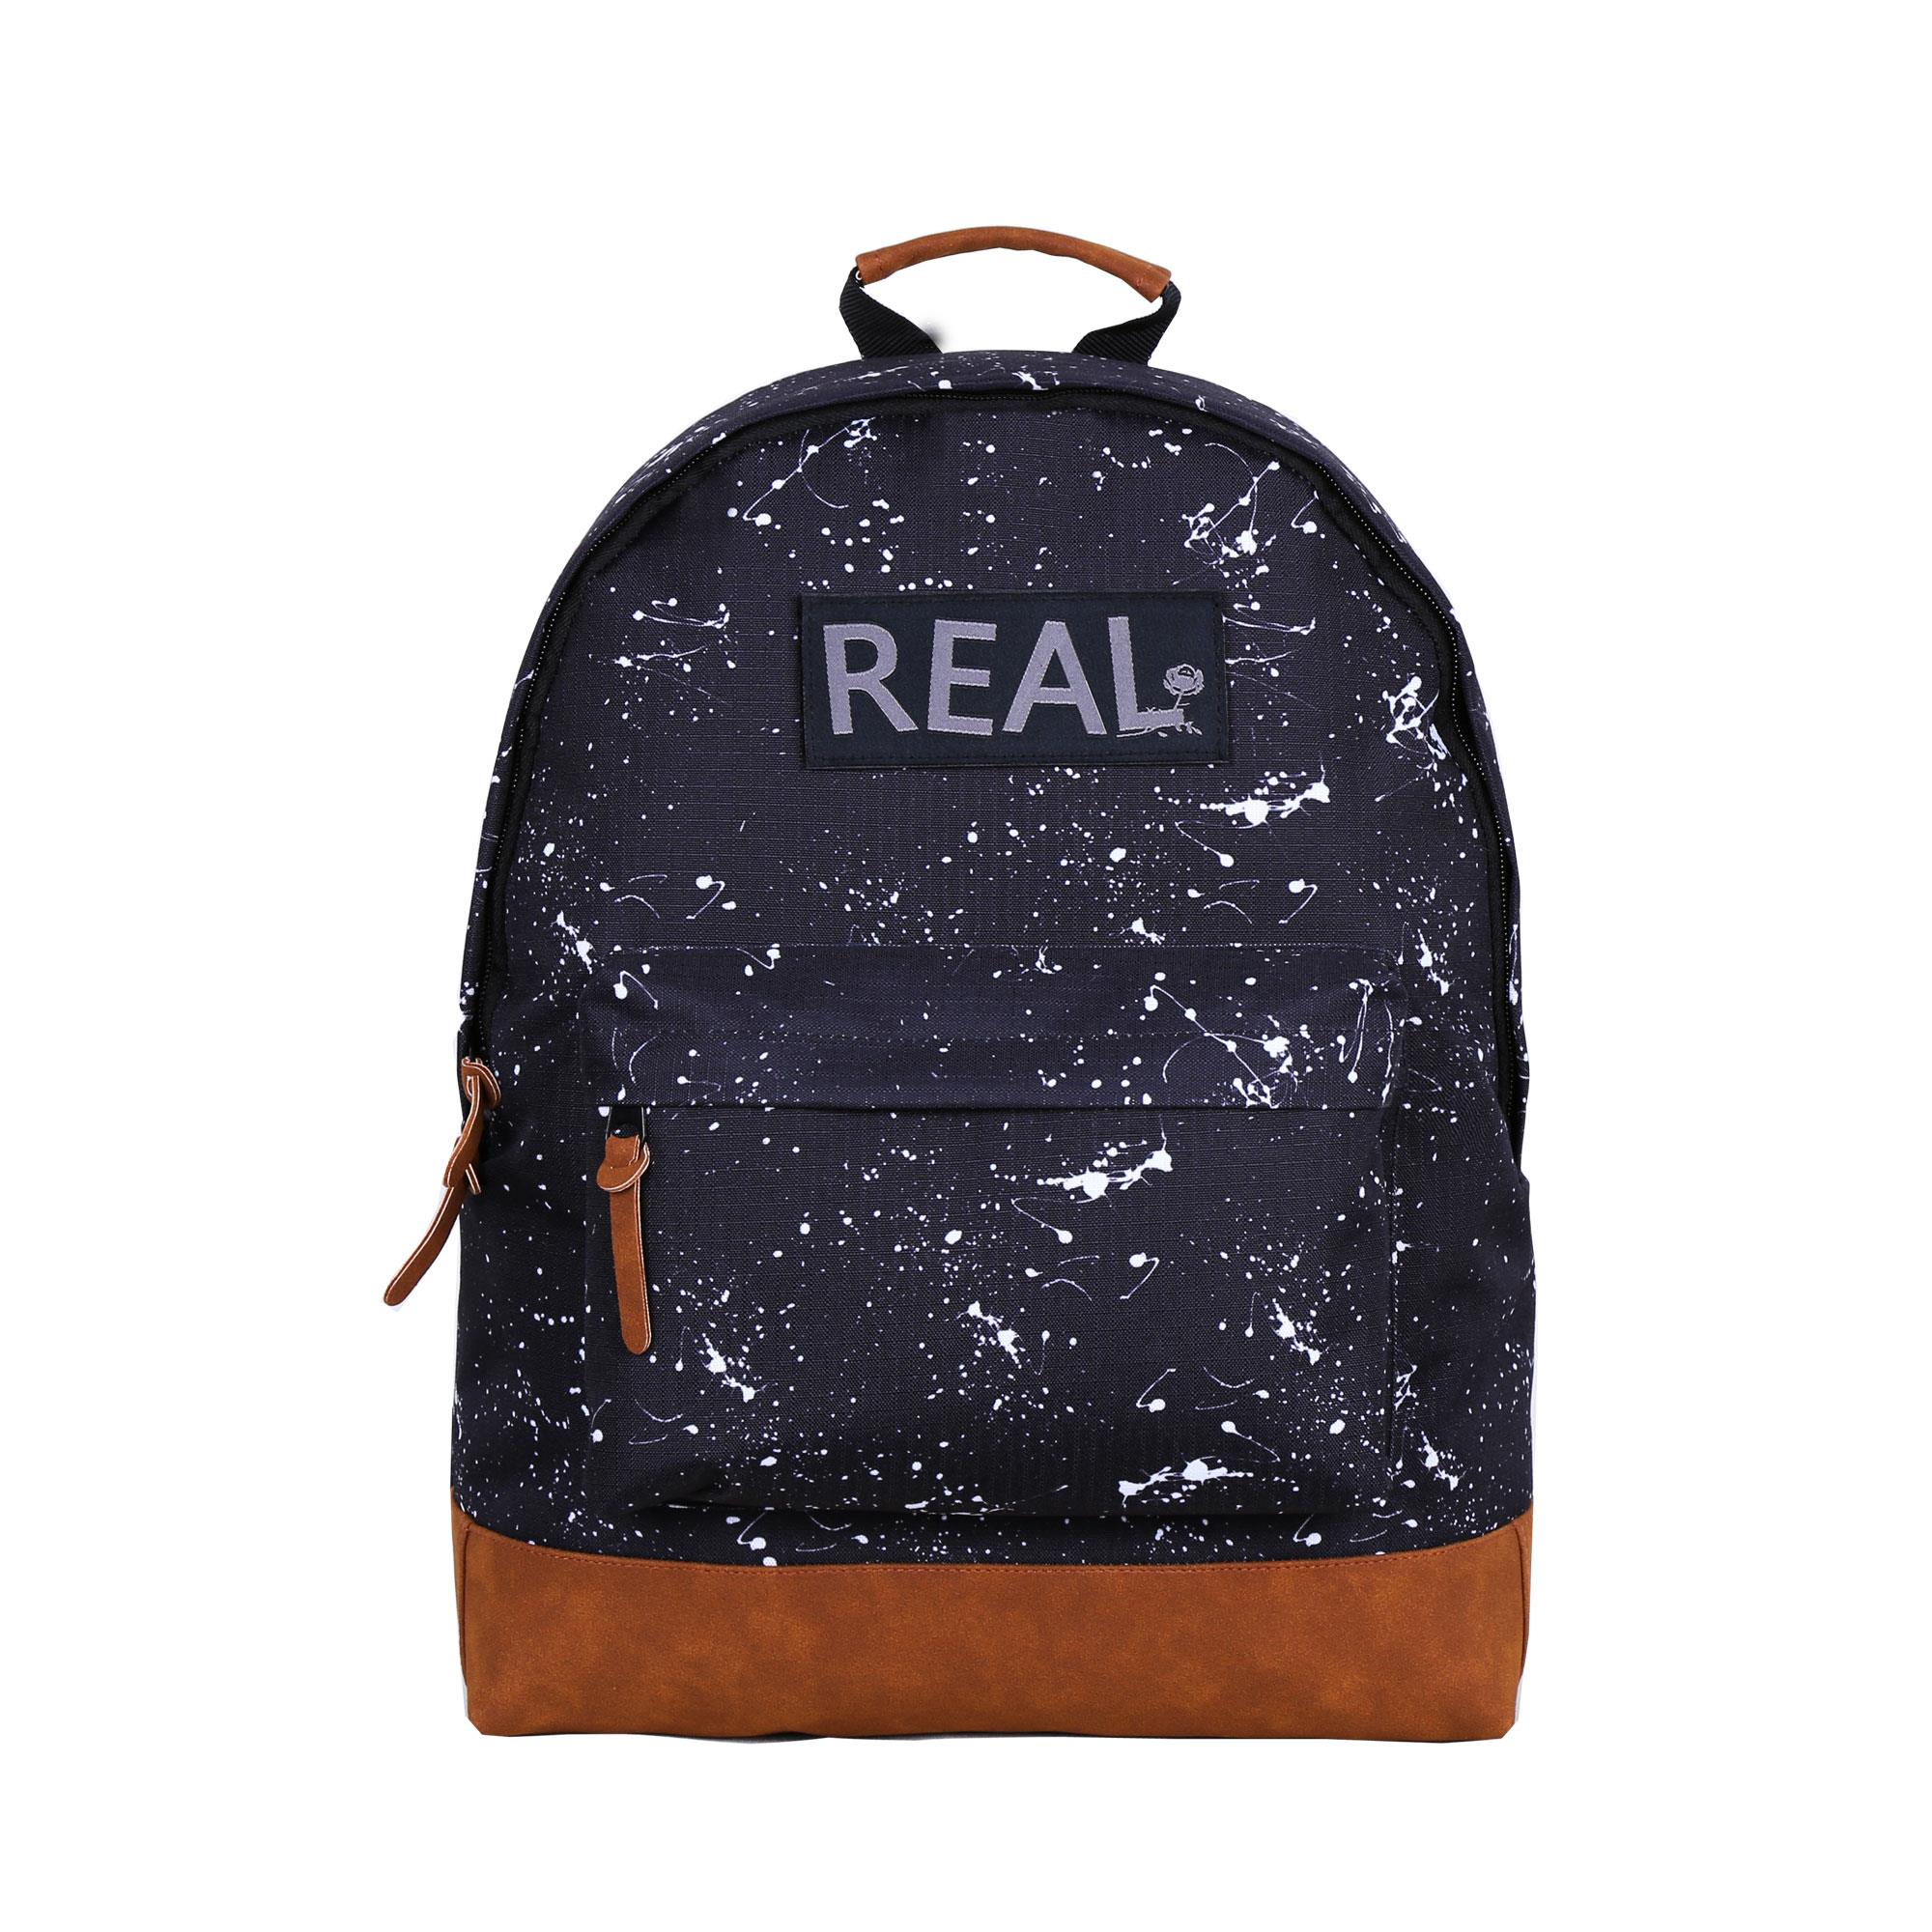 Wholesale Dealers of School Bags -
 B1016-026 ELEGANT BACKPACK – Herbert